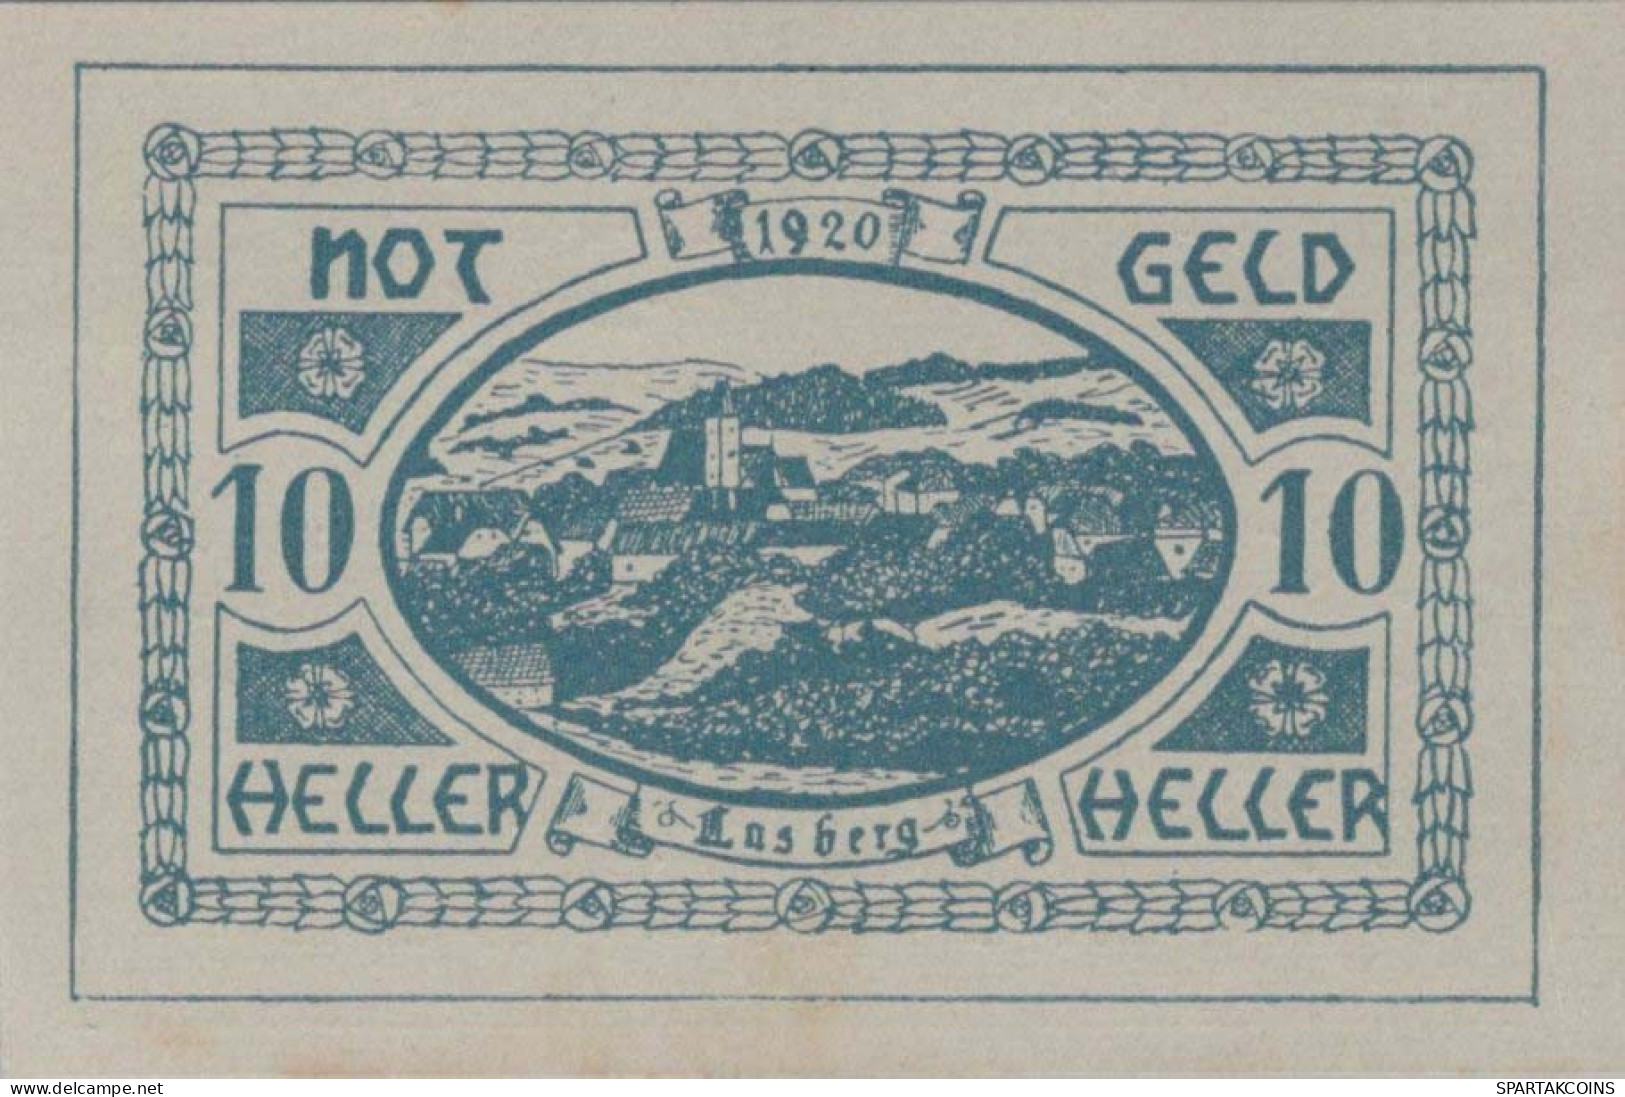 10 HELLER 1920 Stadt LASBERG Oberösterreich Österreich UNC Österreich Notgeld #PH386 - Lokale Ausgaben